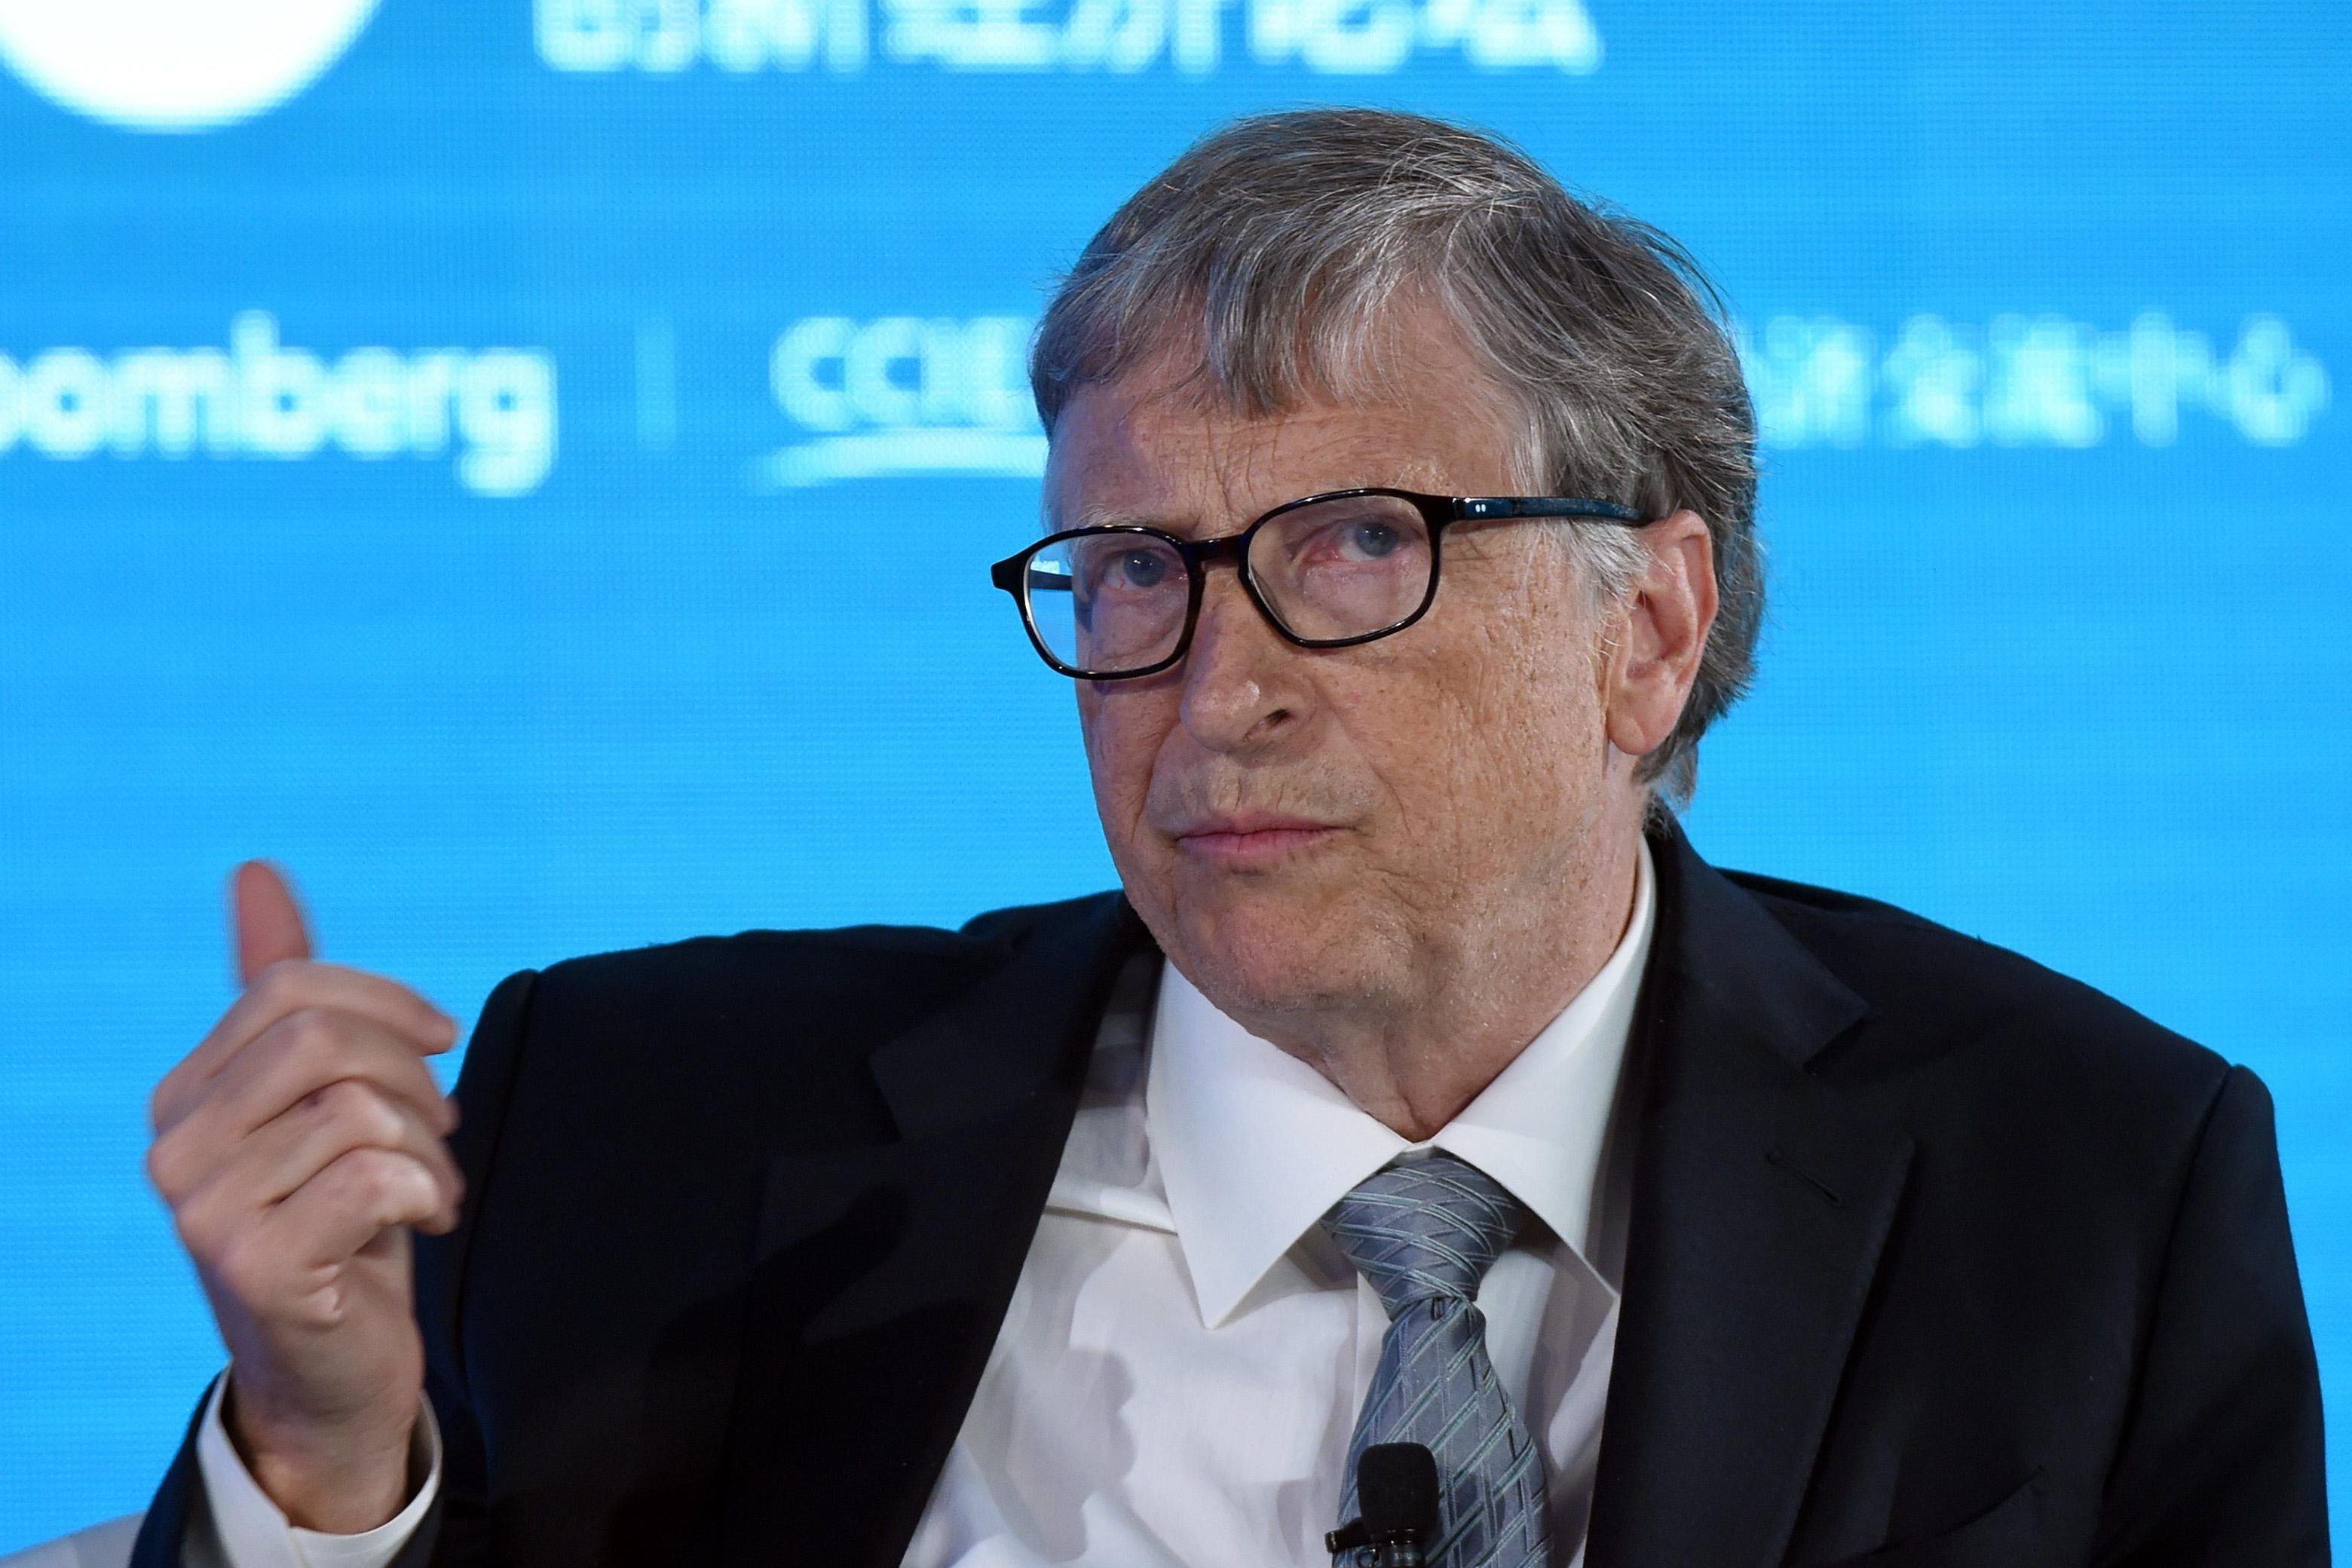 Tỷ phú Bill Gates cho rằng Mỹ chưa ở đỉnh dịch và cần có các biện pháp cứng rắn hơn để ngăn chặn. Ảnh: Getty